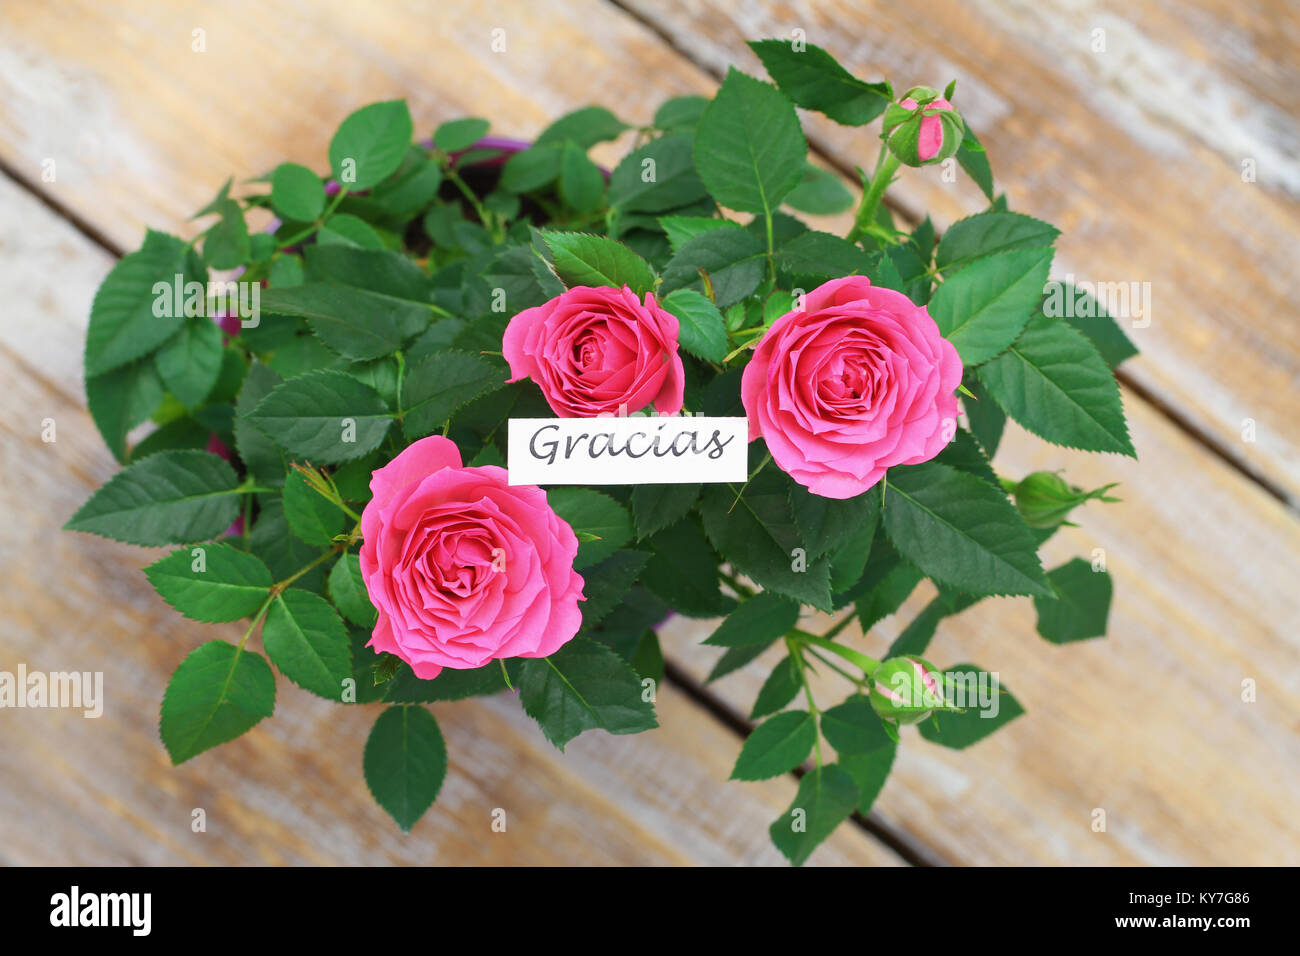 Gracias (merci en espagnol) avec pink roses sauvages Banque D'Images